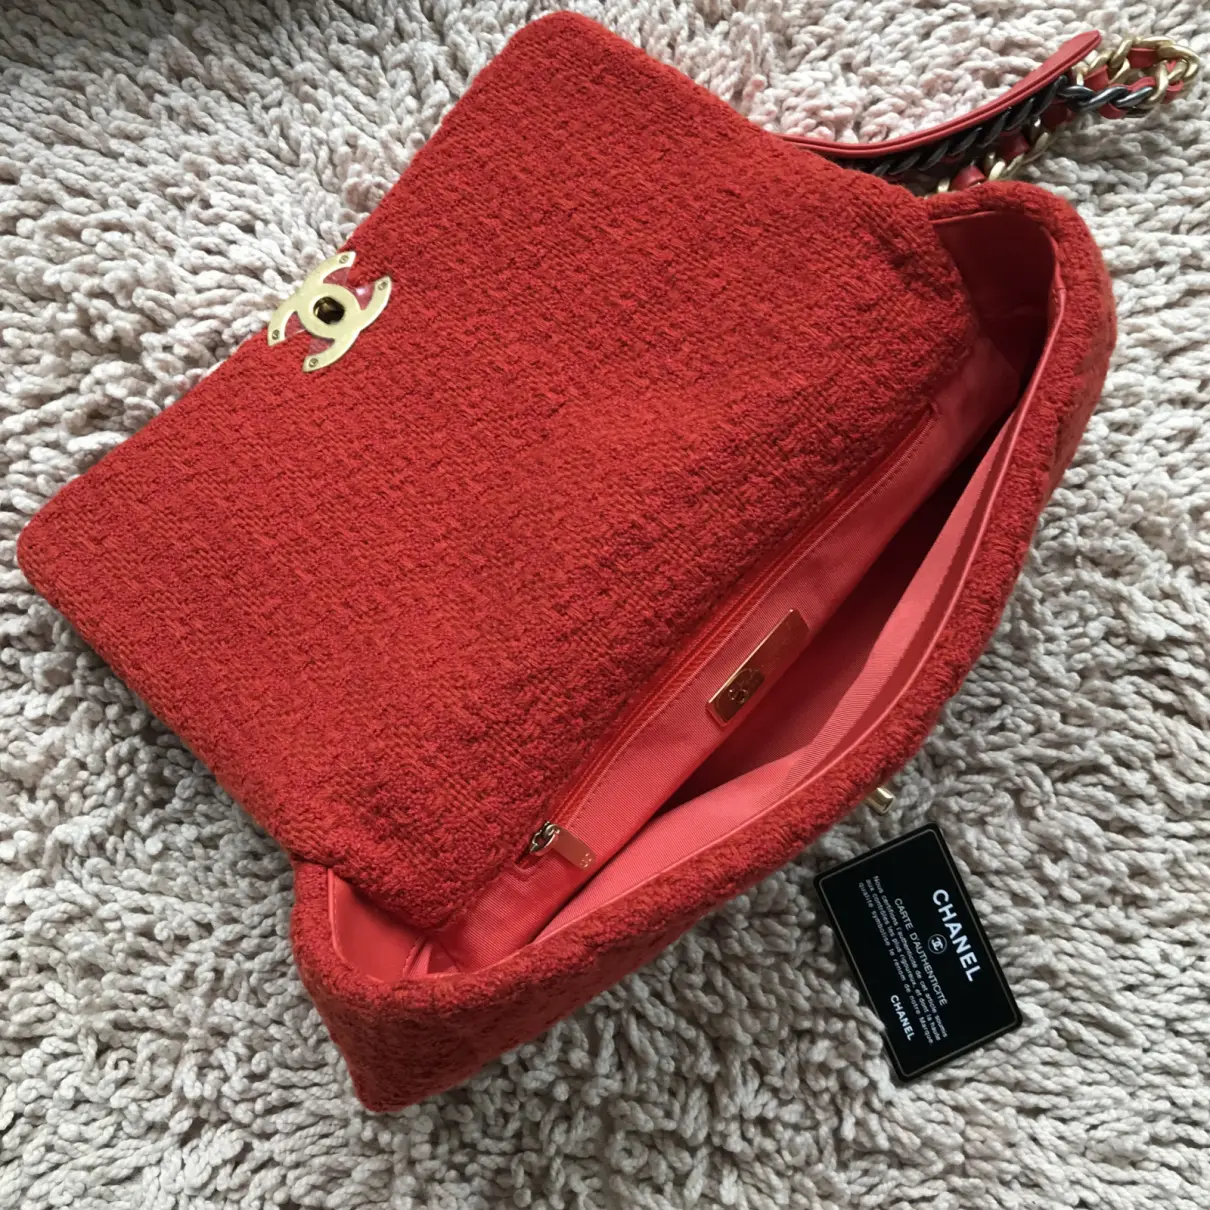 Chanel 19 tweed handbag Chanel